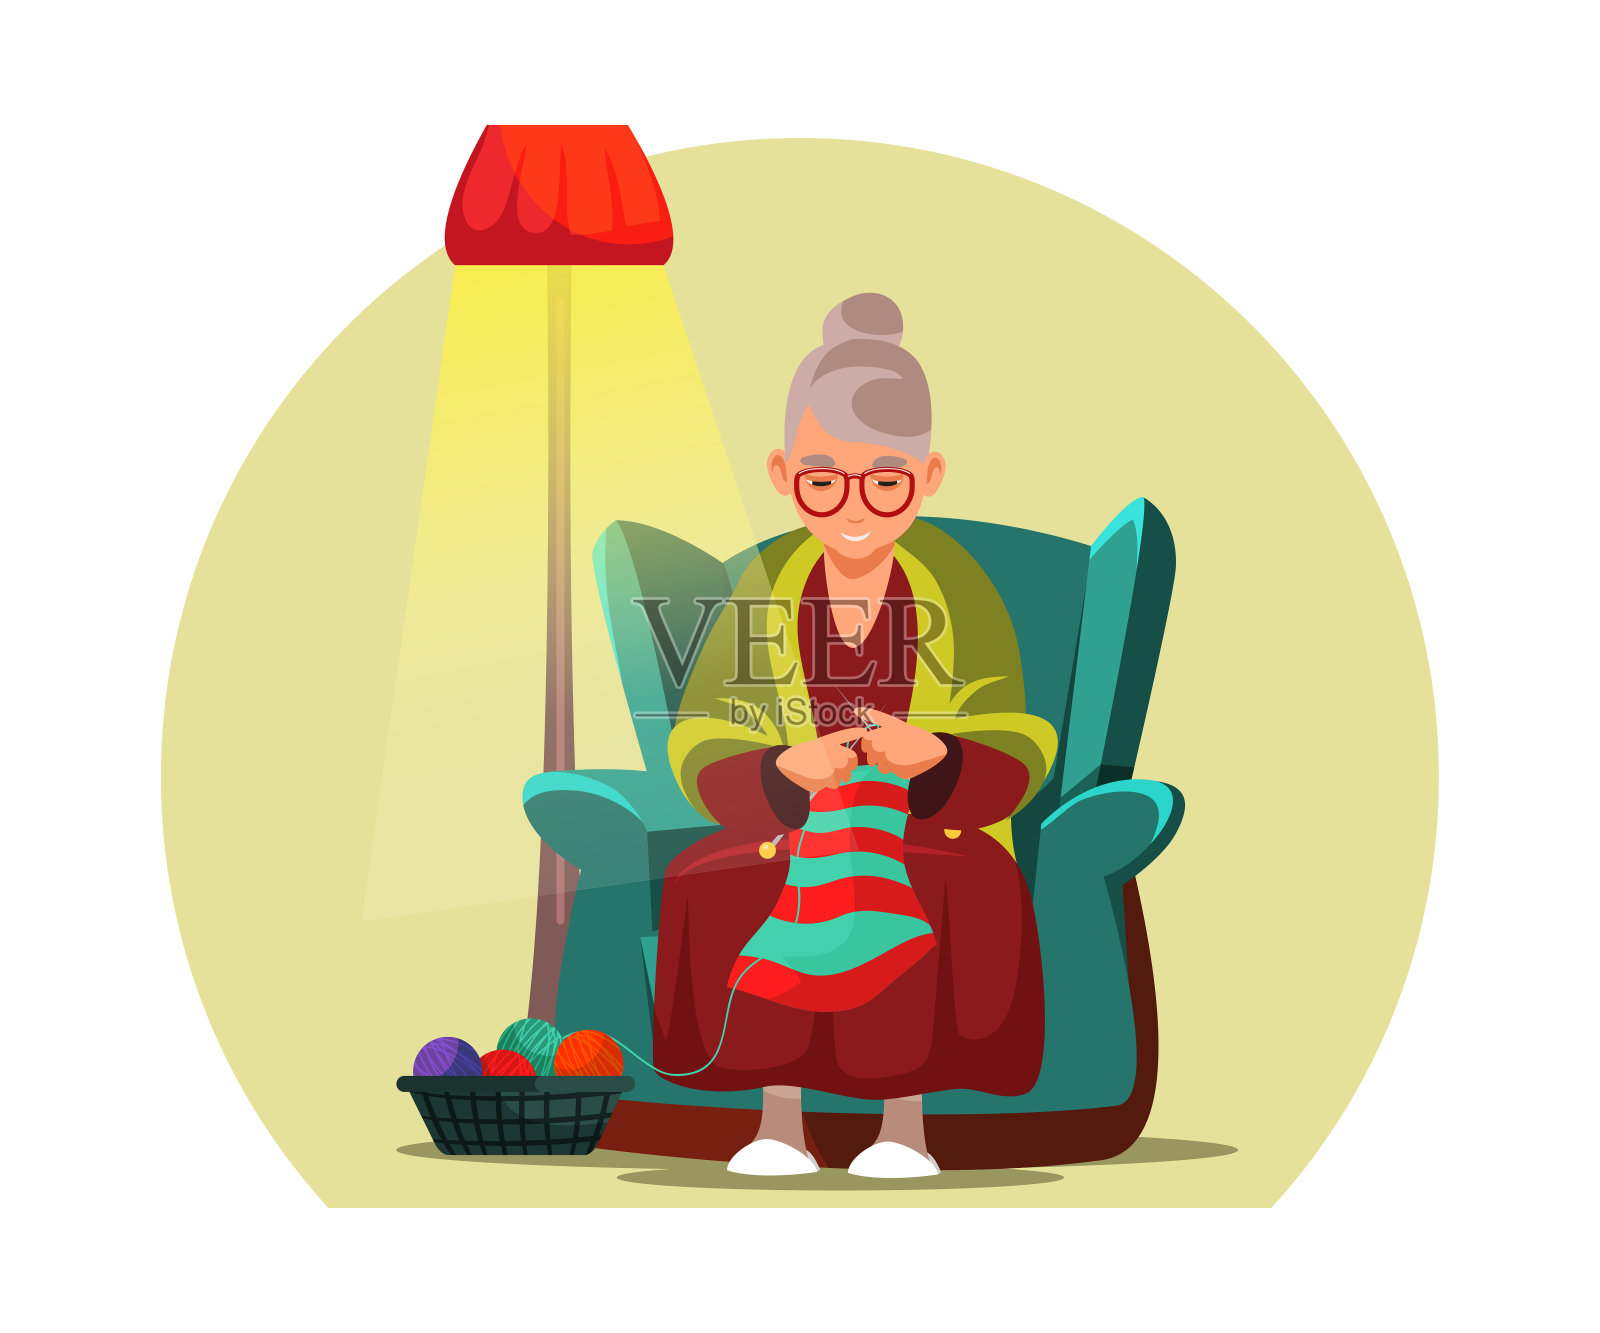 微笑的老妇人 库存照片. 图片 包括有 生活方式, 活动家, 老婆婆, 领退休金者, 白种人, 时髦, 长辈 - 49352290